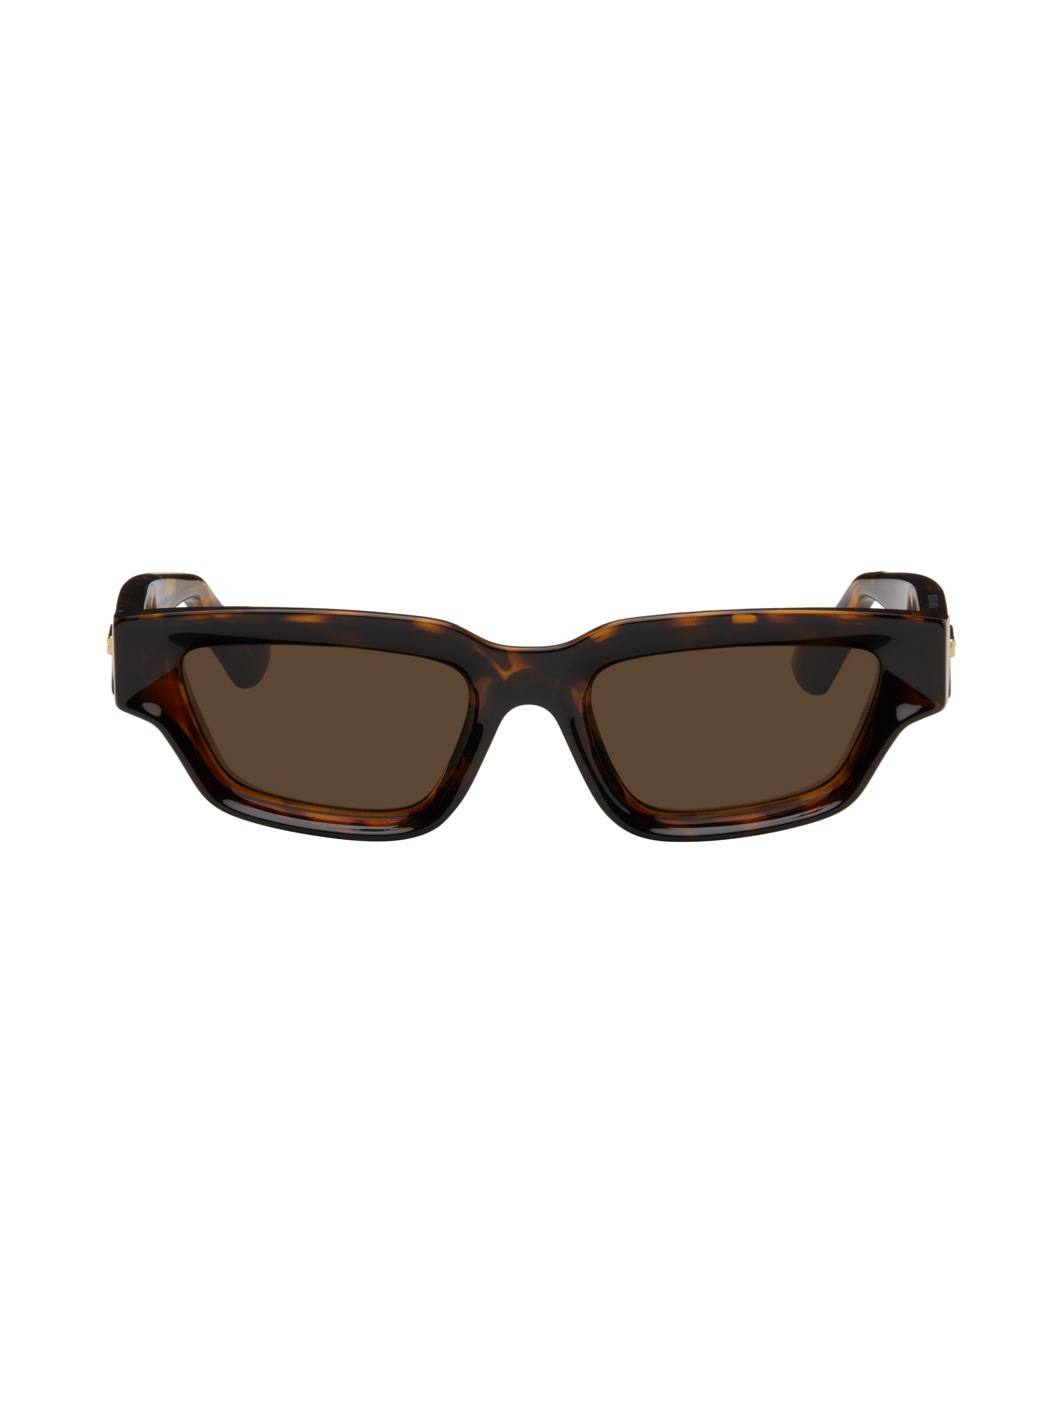 Tortoiseshell Sharp Square Sunglasses - 1